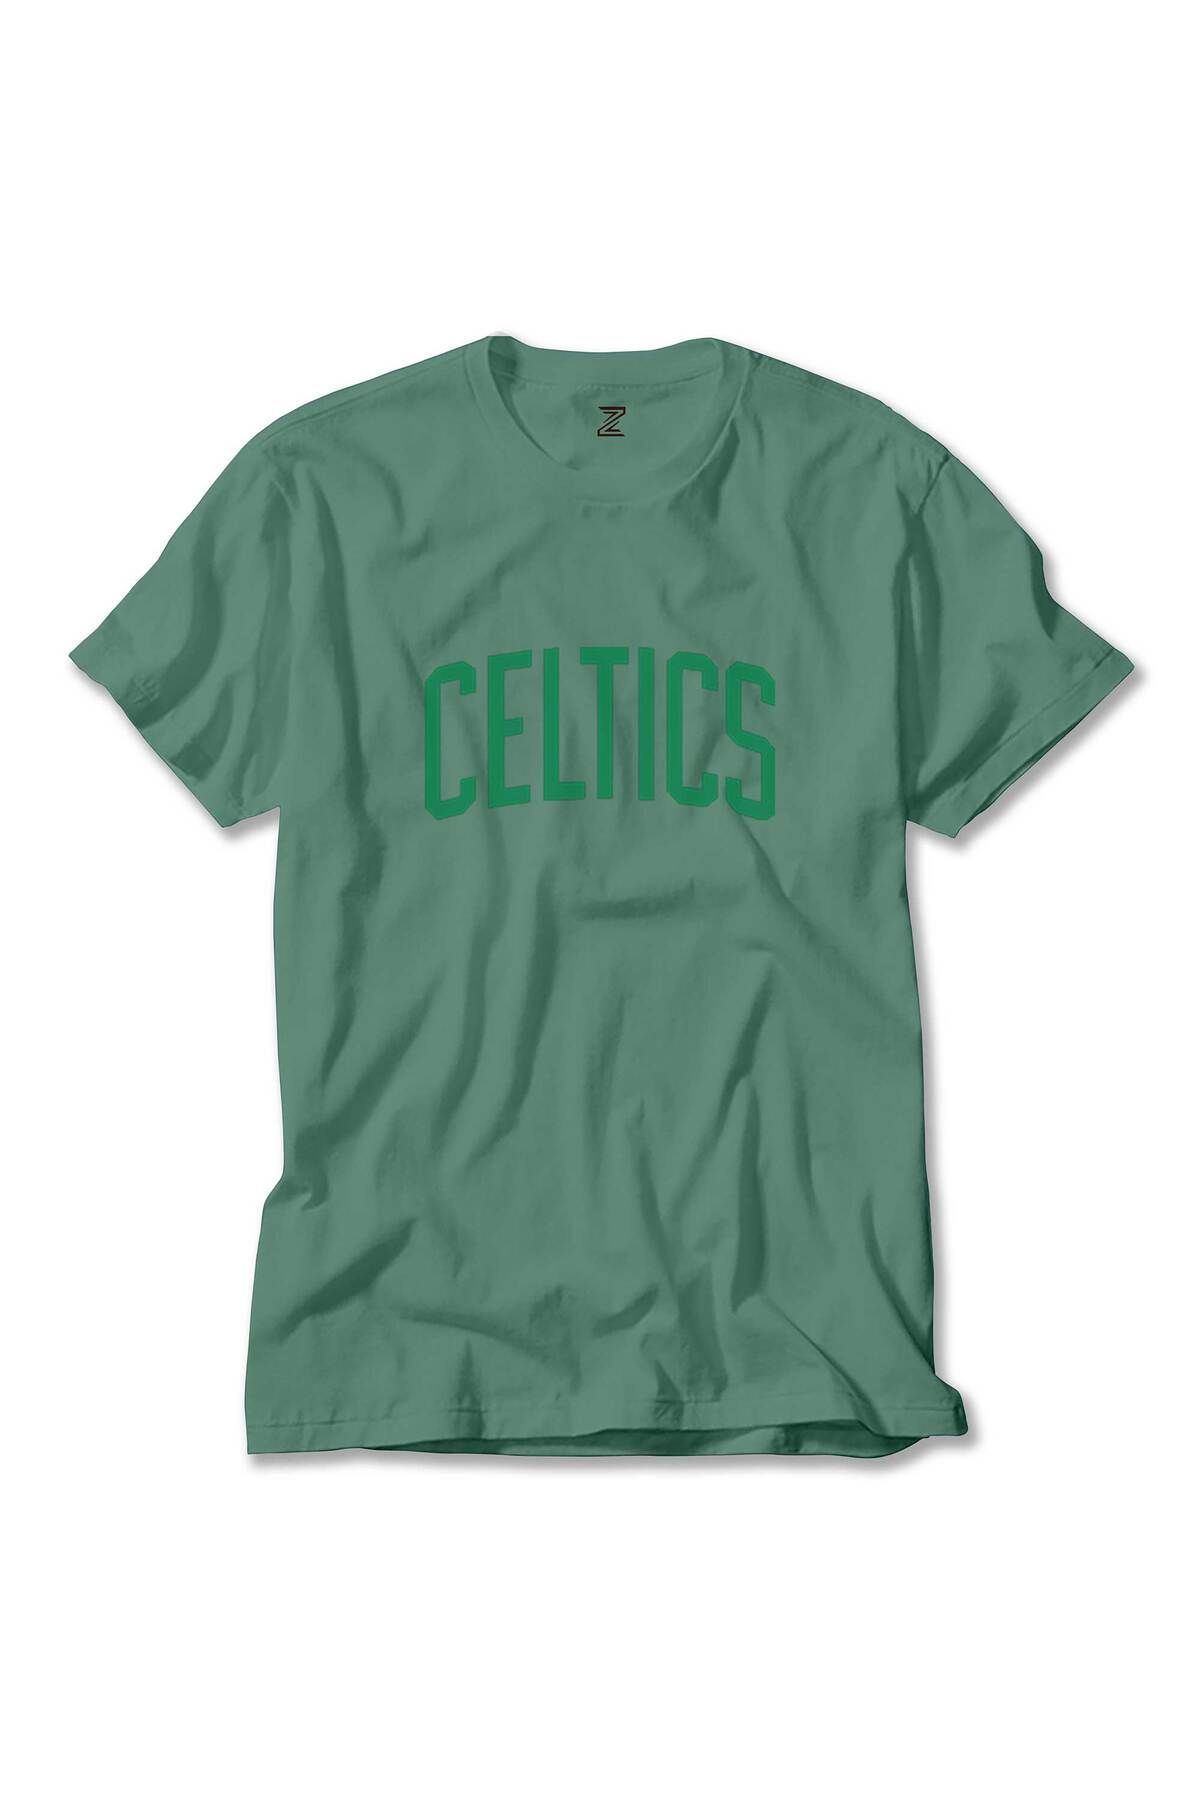 Z zepplin Boston Celtics Yazı Yeşil Tişört